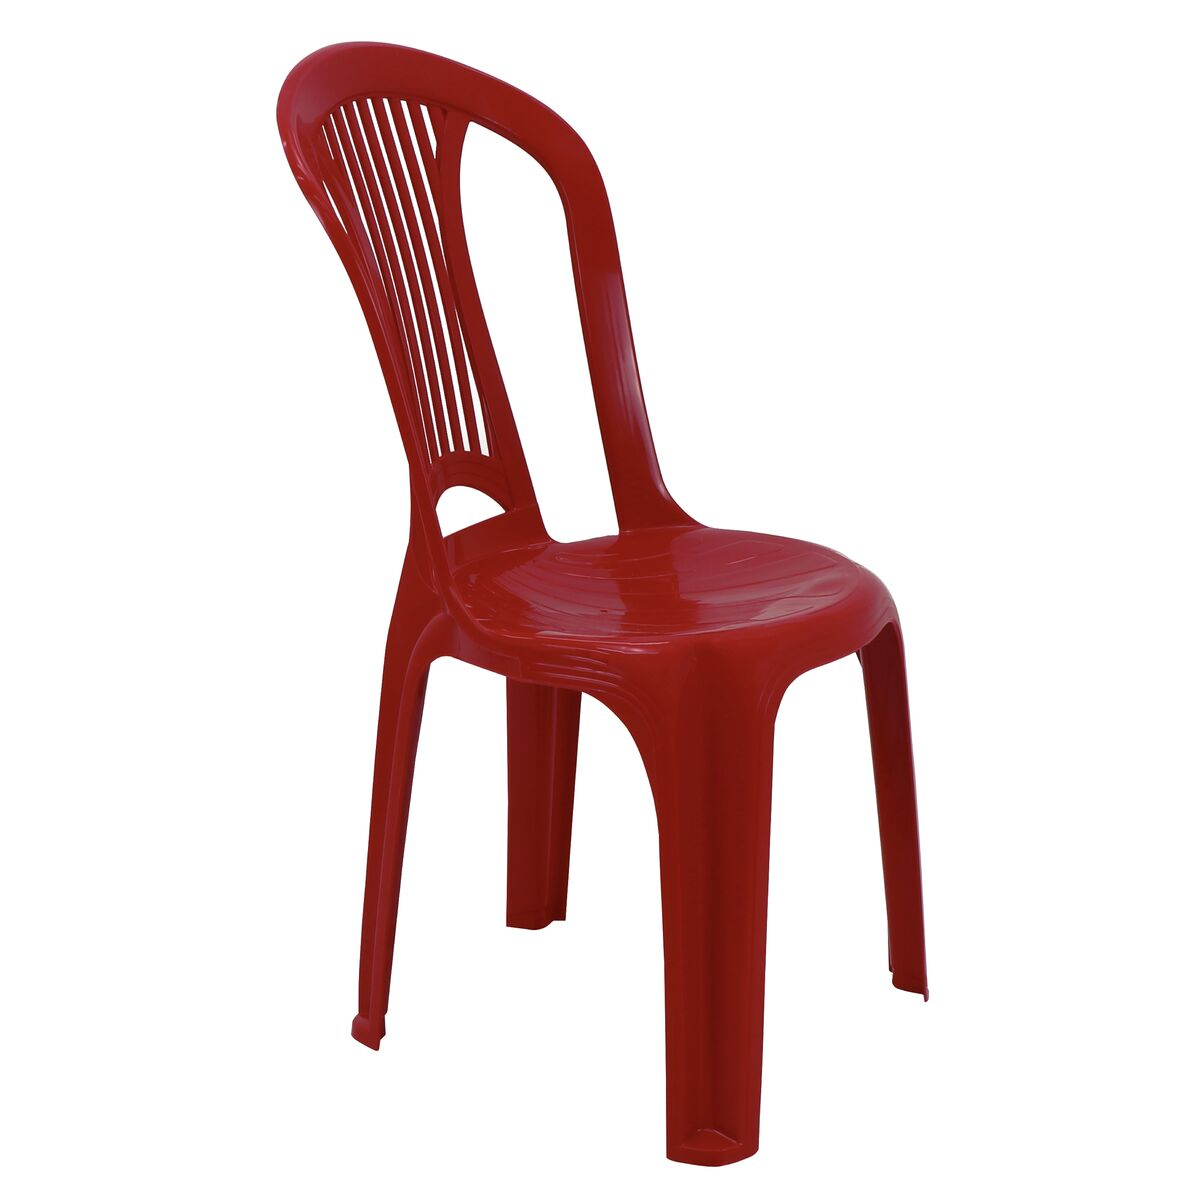 Cadeira Bistrô Tramontina Atlântida em Polipropileno Vermelho